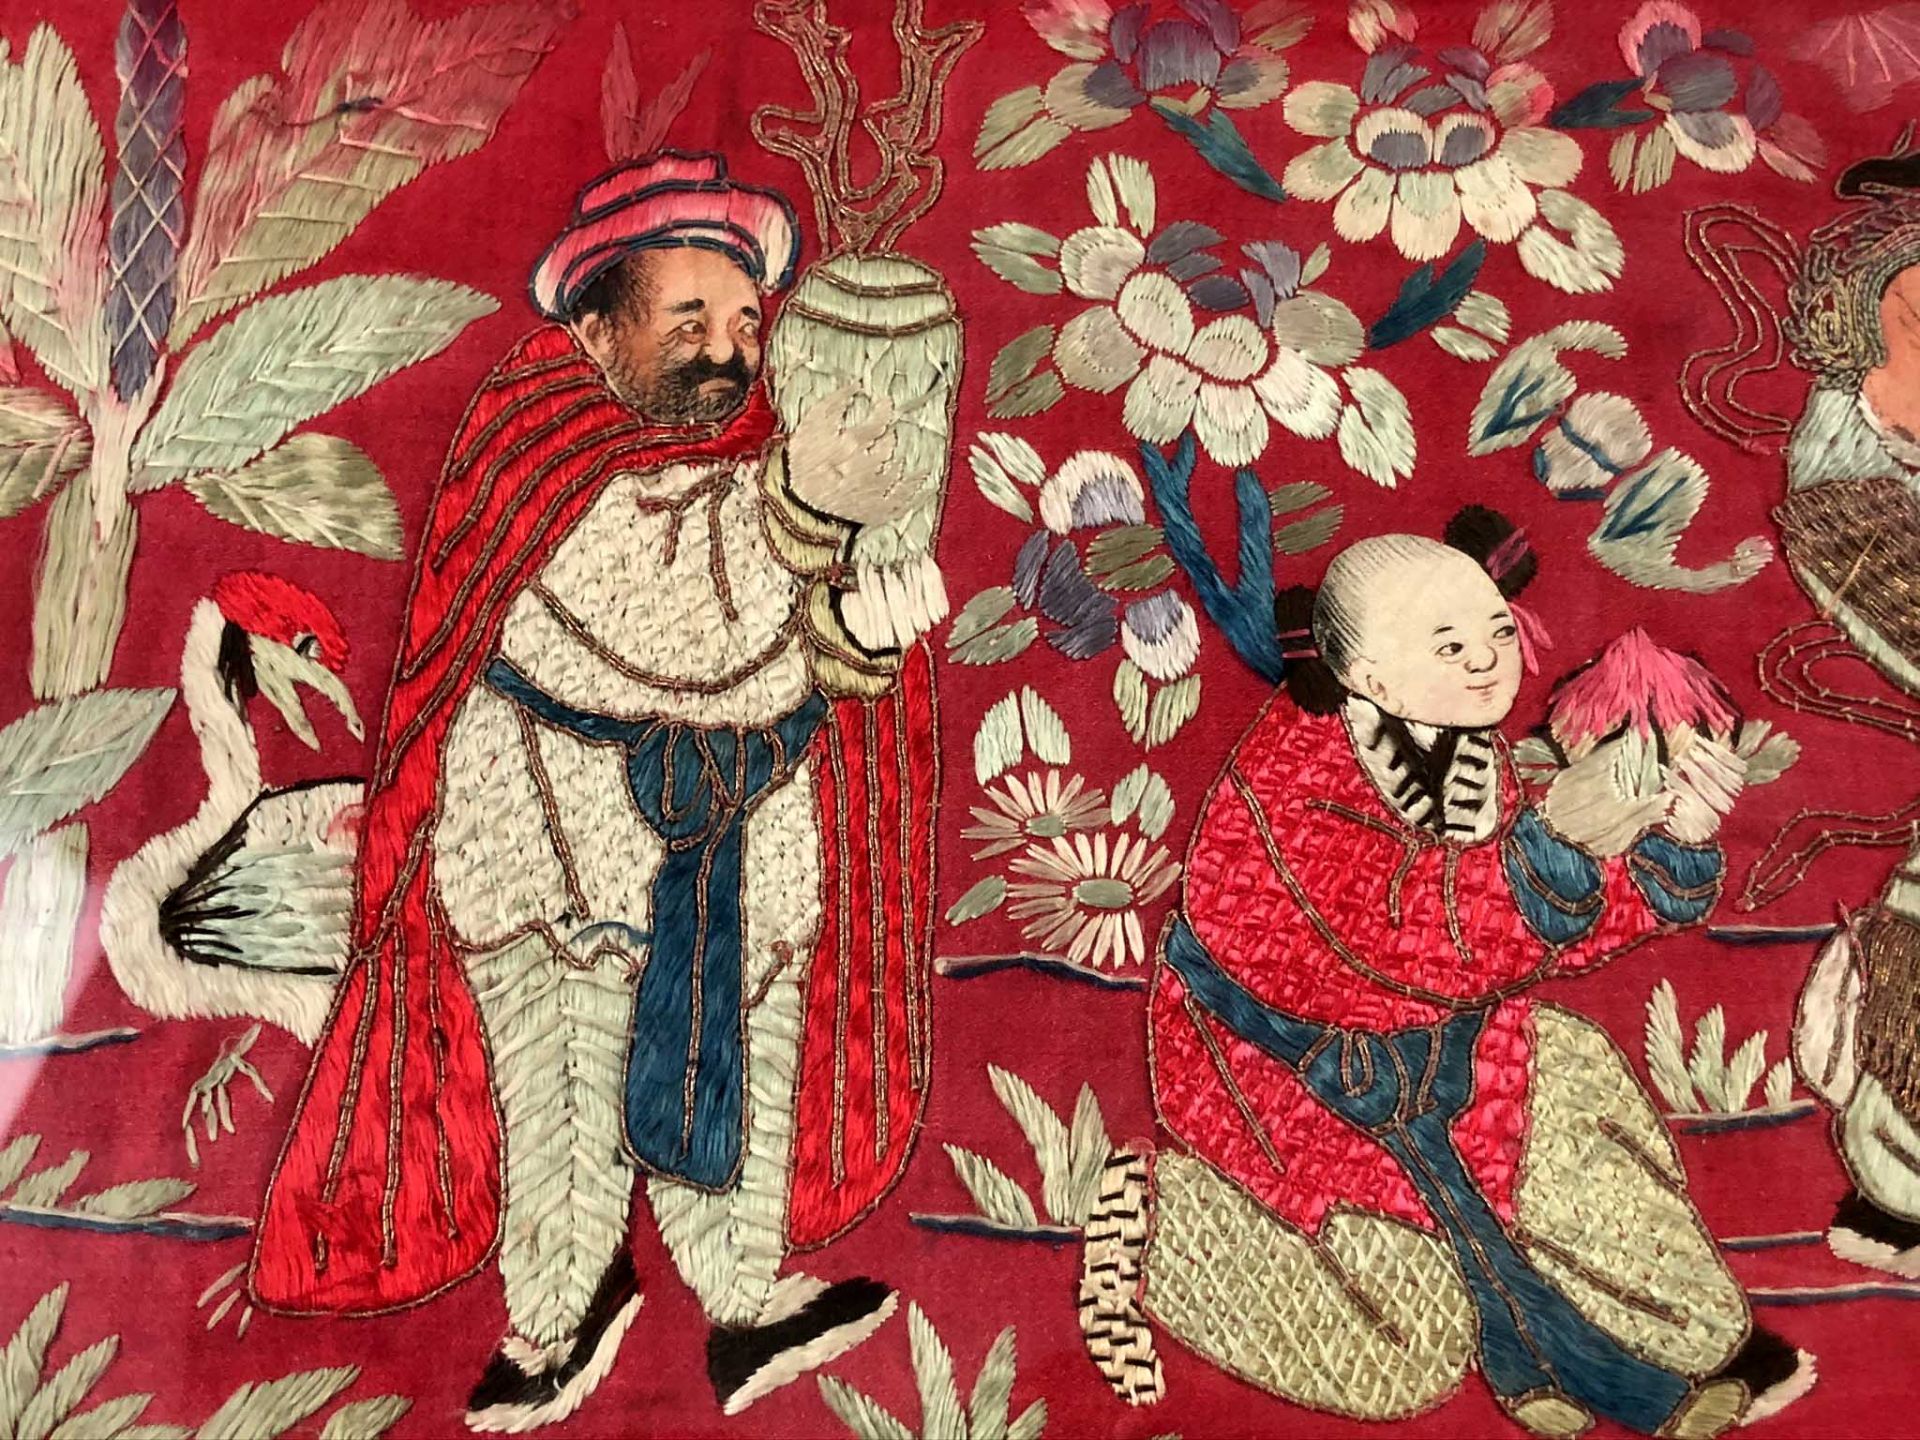 Behang. Seidenstickerei, Stumpwork. Wohl China 19. Jahrhundert.91,5 cm x 98 cm sichtbar. Hinten - Bild 4 aus 14